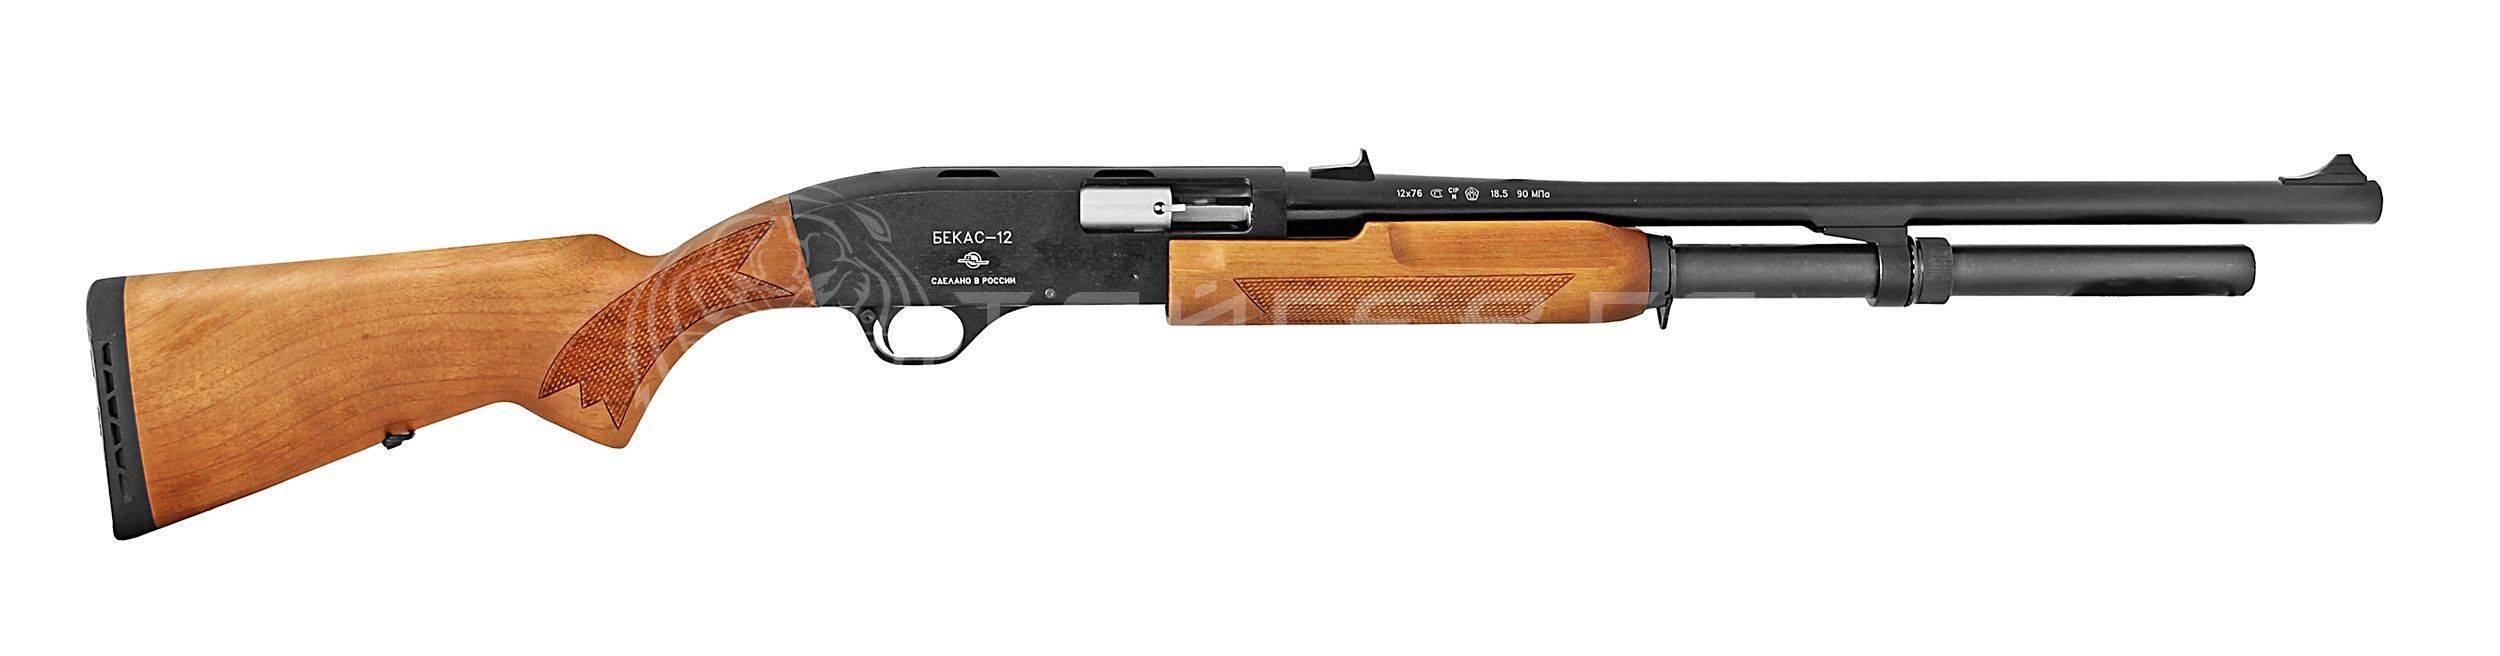 Гладкоствольное ружье Бекас-12 М (ВПО-202-07)